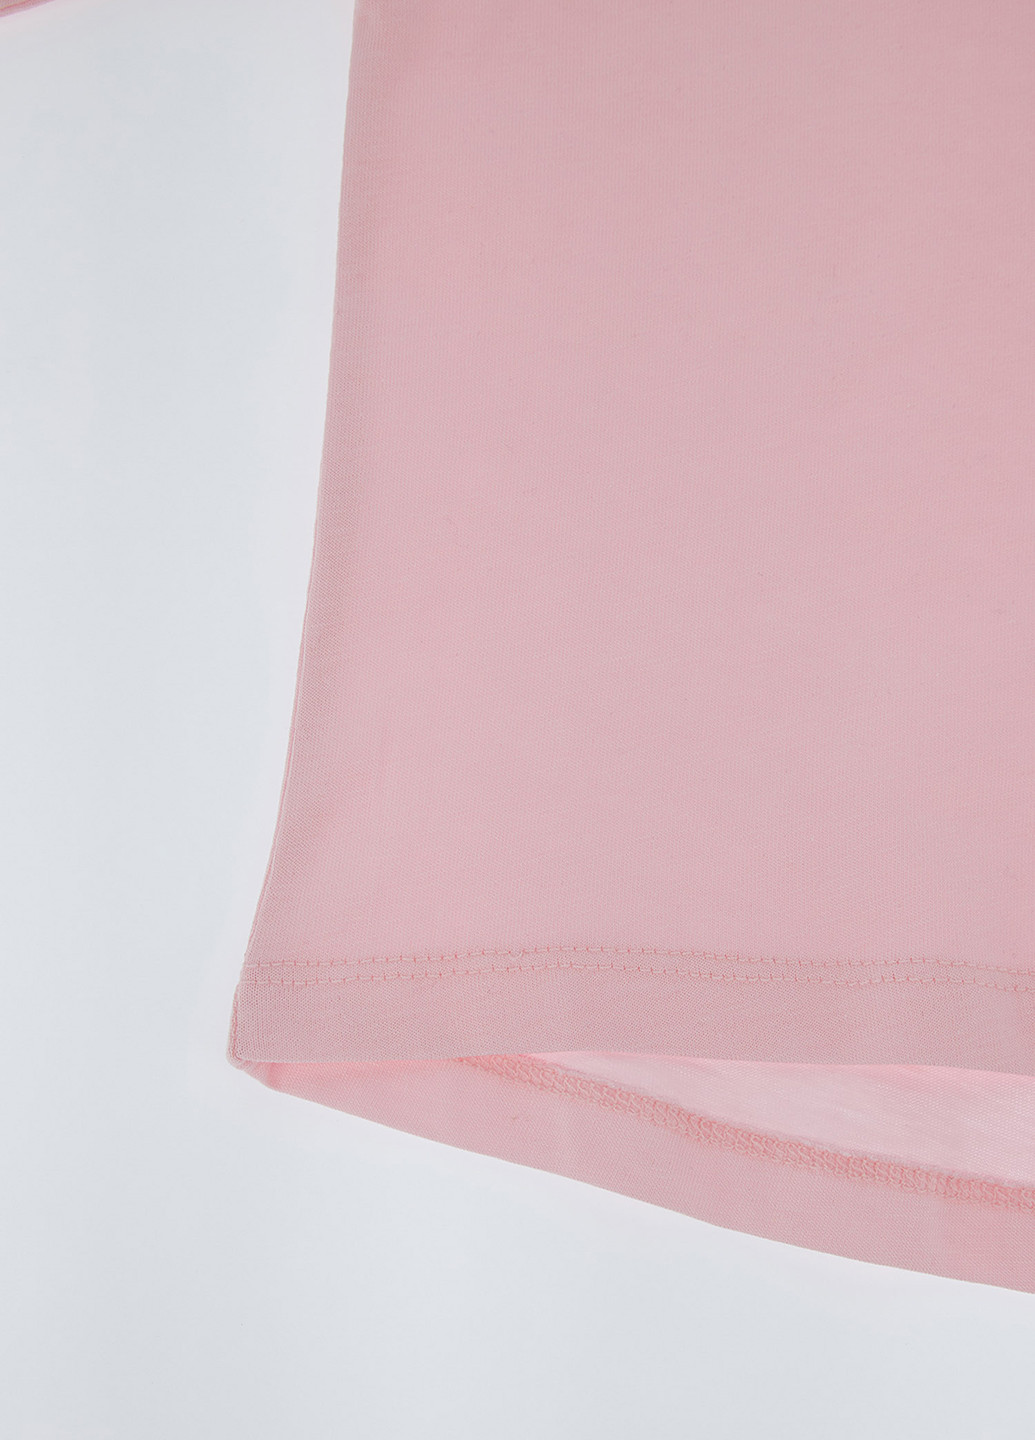 Светло-розовый летний комплект(футболка, брюки) DeFacto